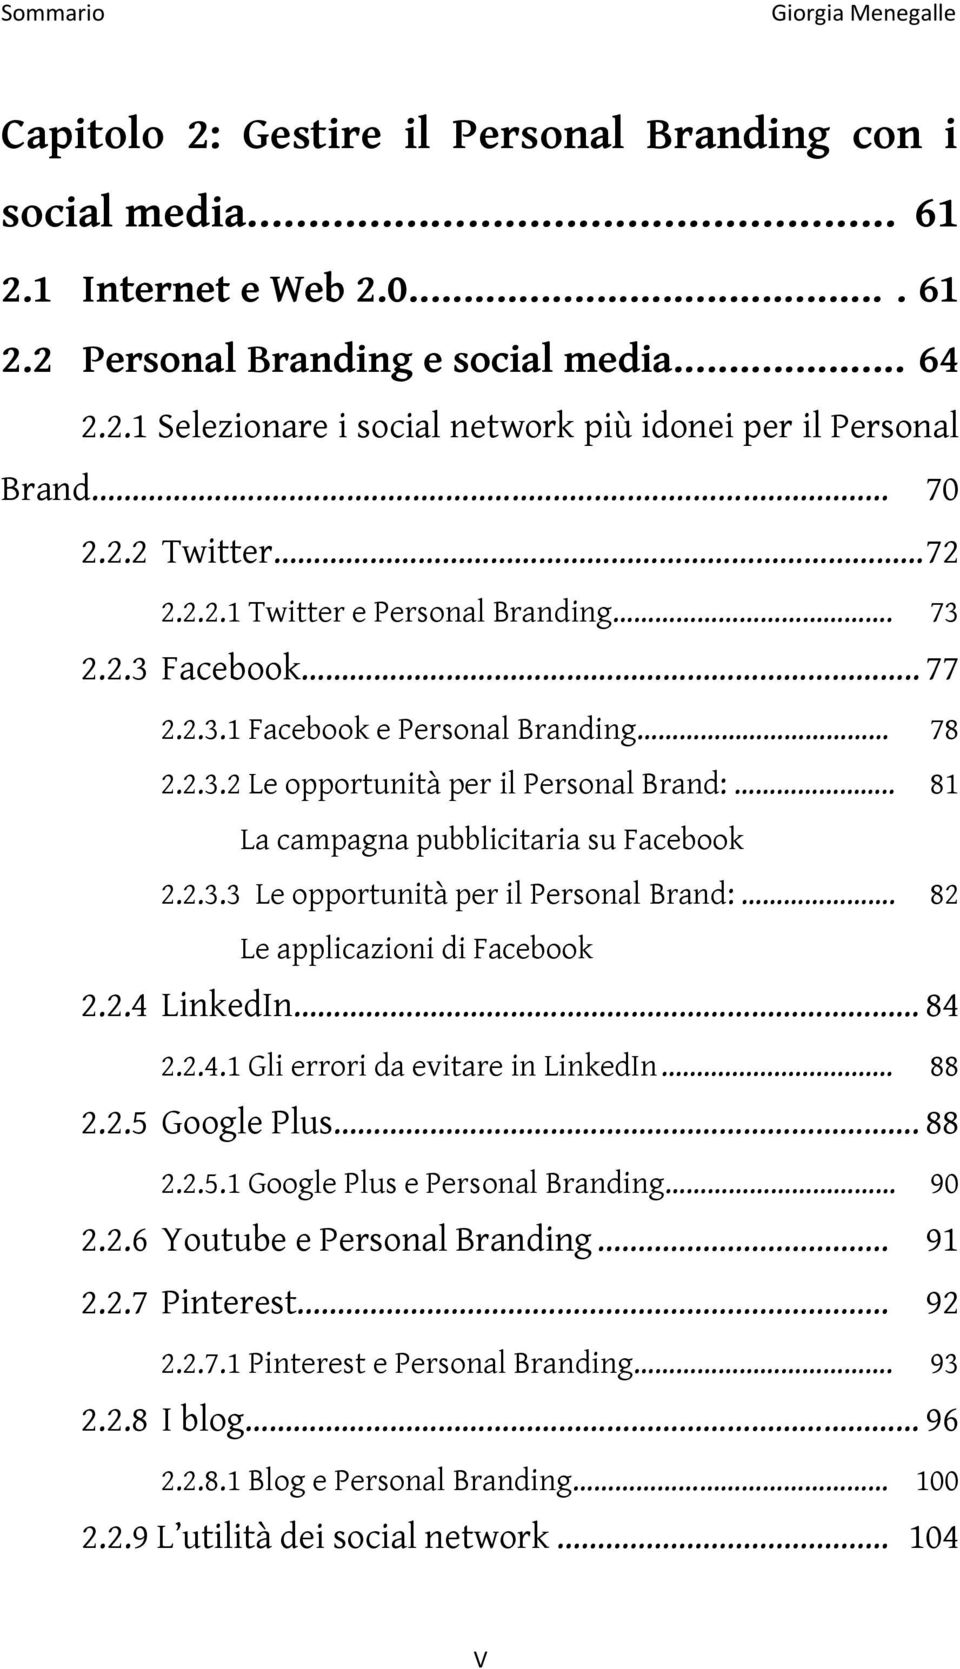 . 81 La campagna pubblicitaria su Facebook 2.2.3.3 Le opportunità per il Personal Brand:. 82 Le applicazioni di Facebook 2.2.4 LinkedIn 84 2.2.4.1 Gli errori da evitare in LinkedIn... 88 2.2.5 Google Plus.